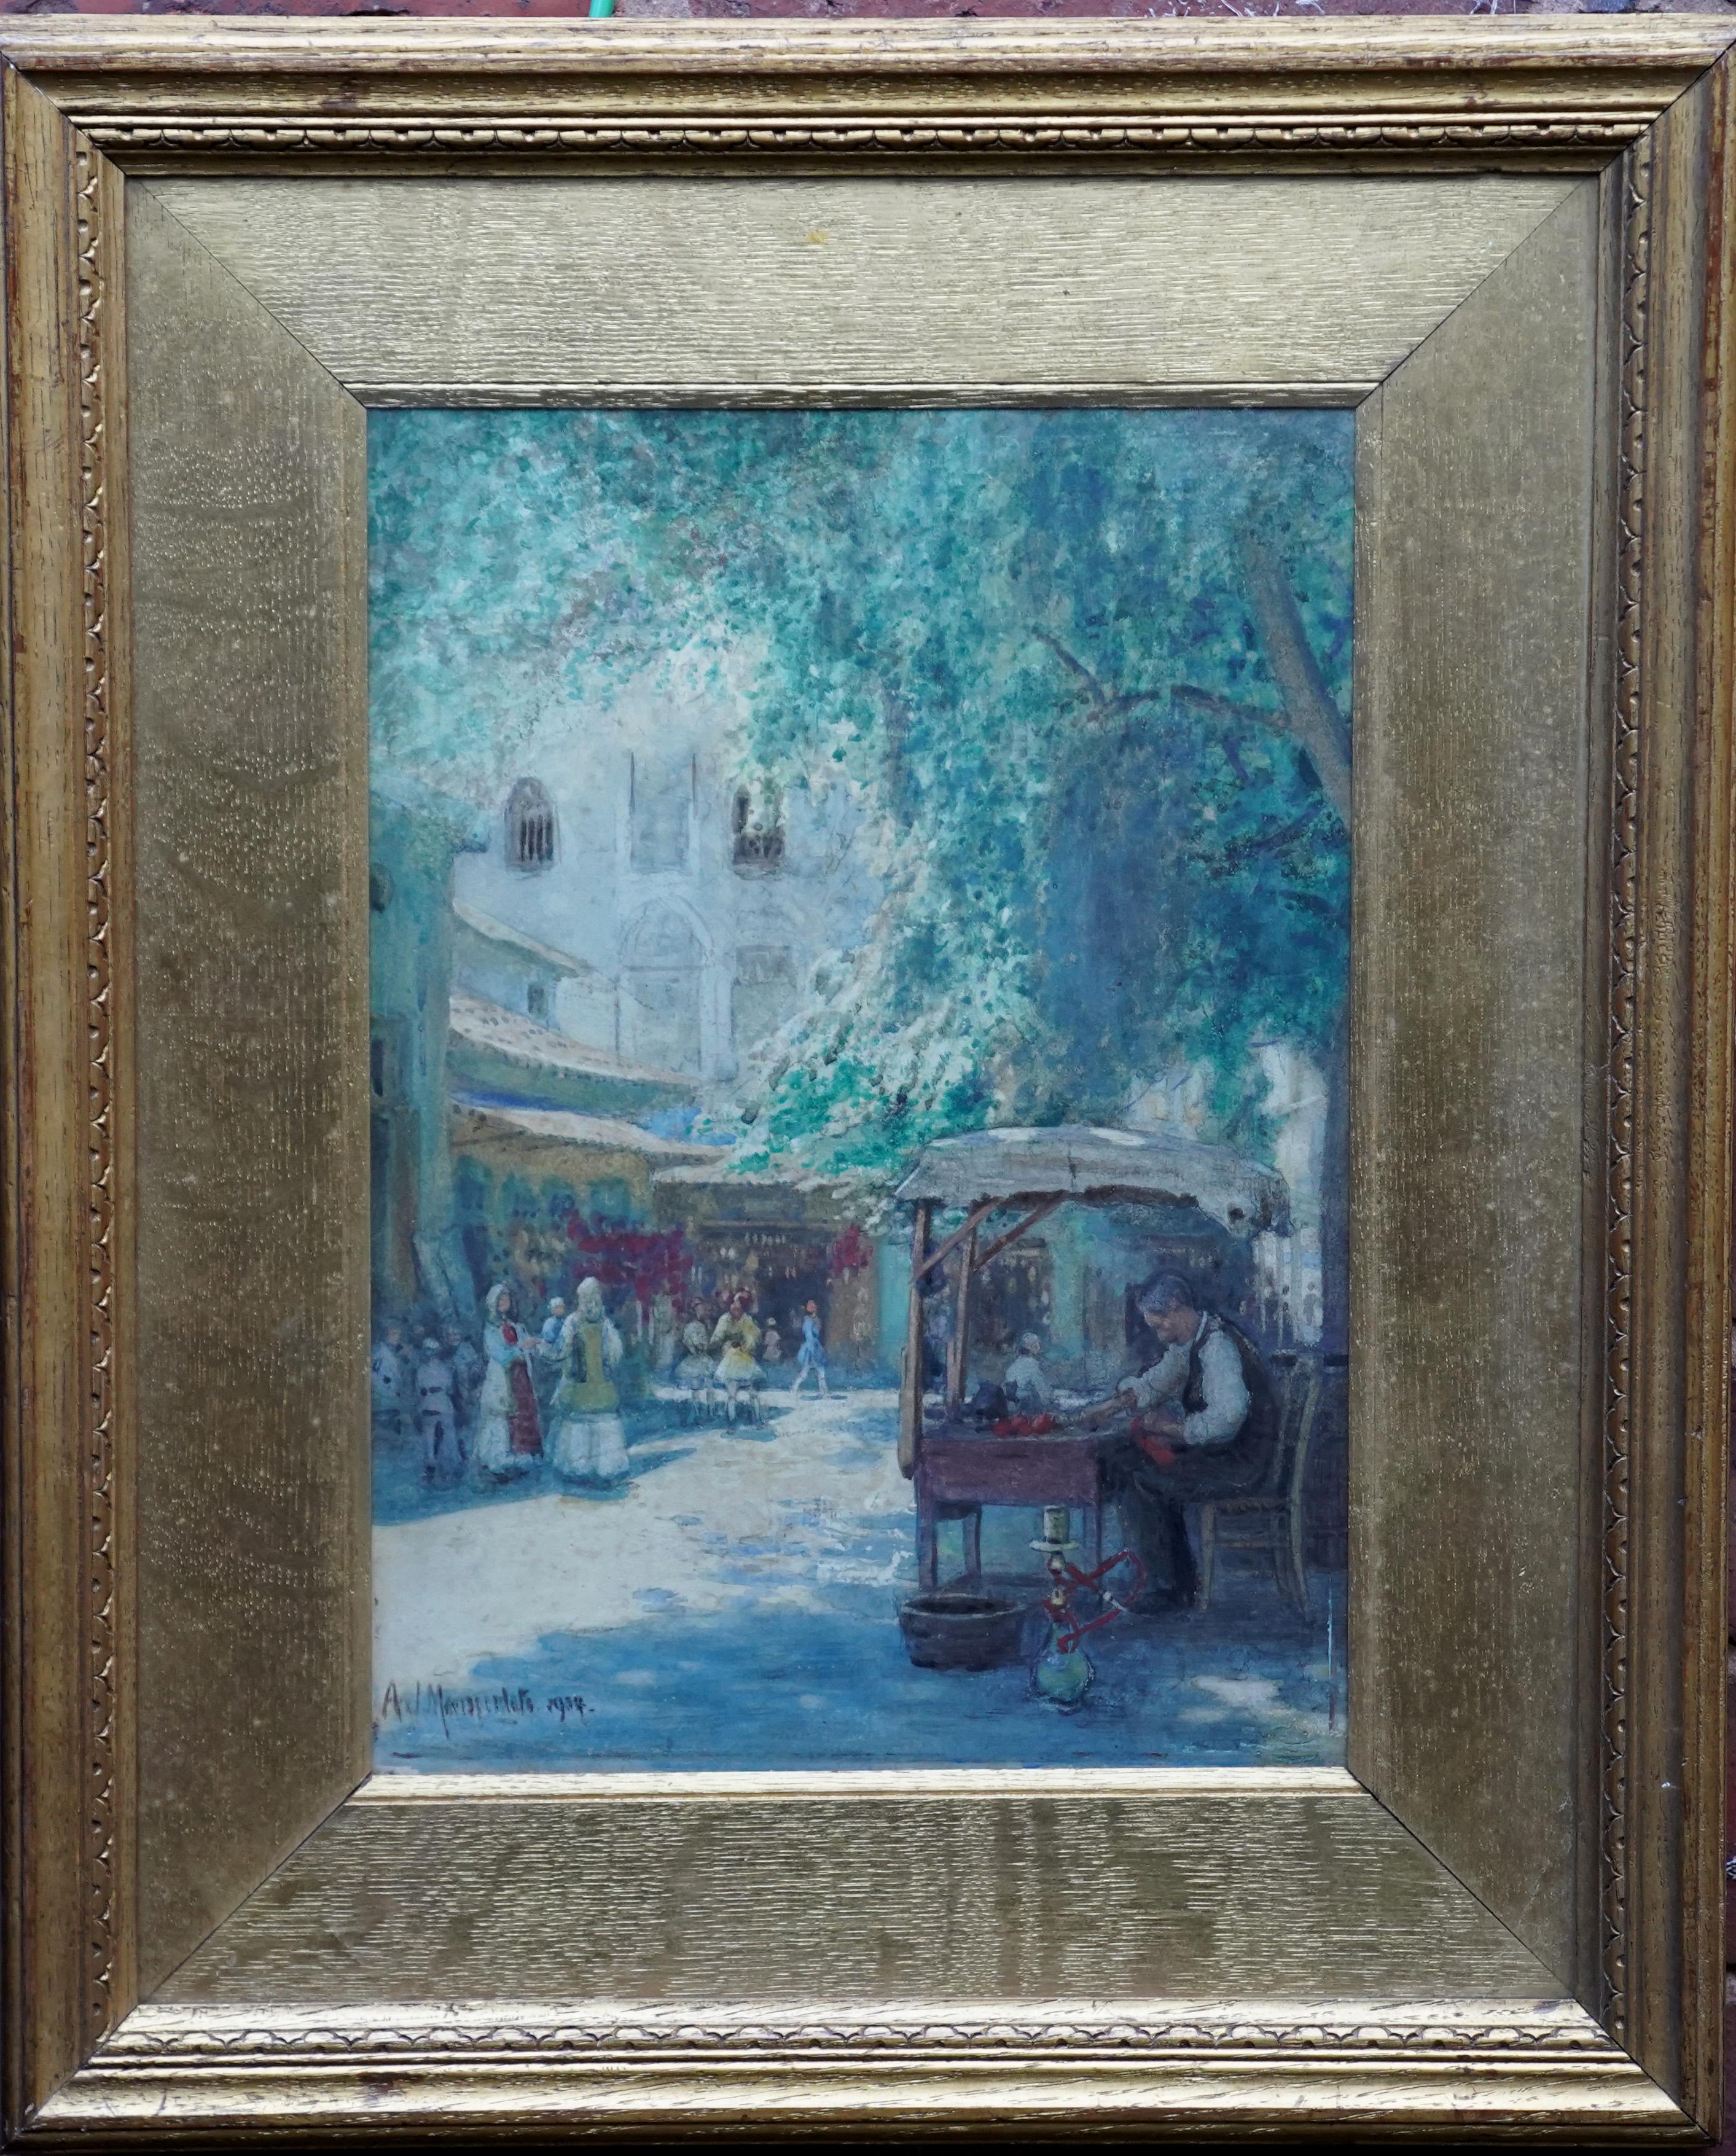 Figurative Painting Unknown - Une scène de marché - peinture à l'aquarelle impressionniste française de 1914, signée indis